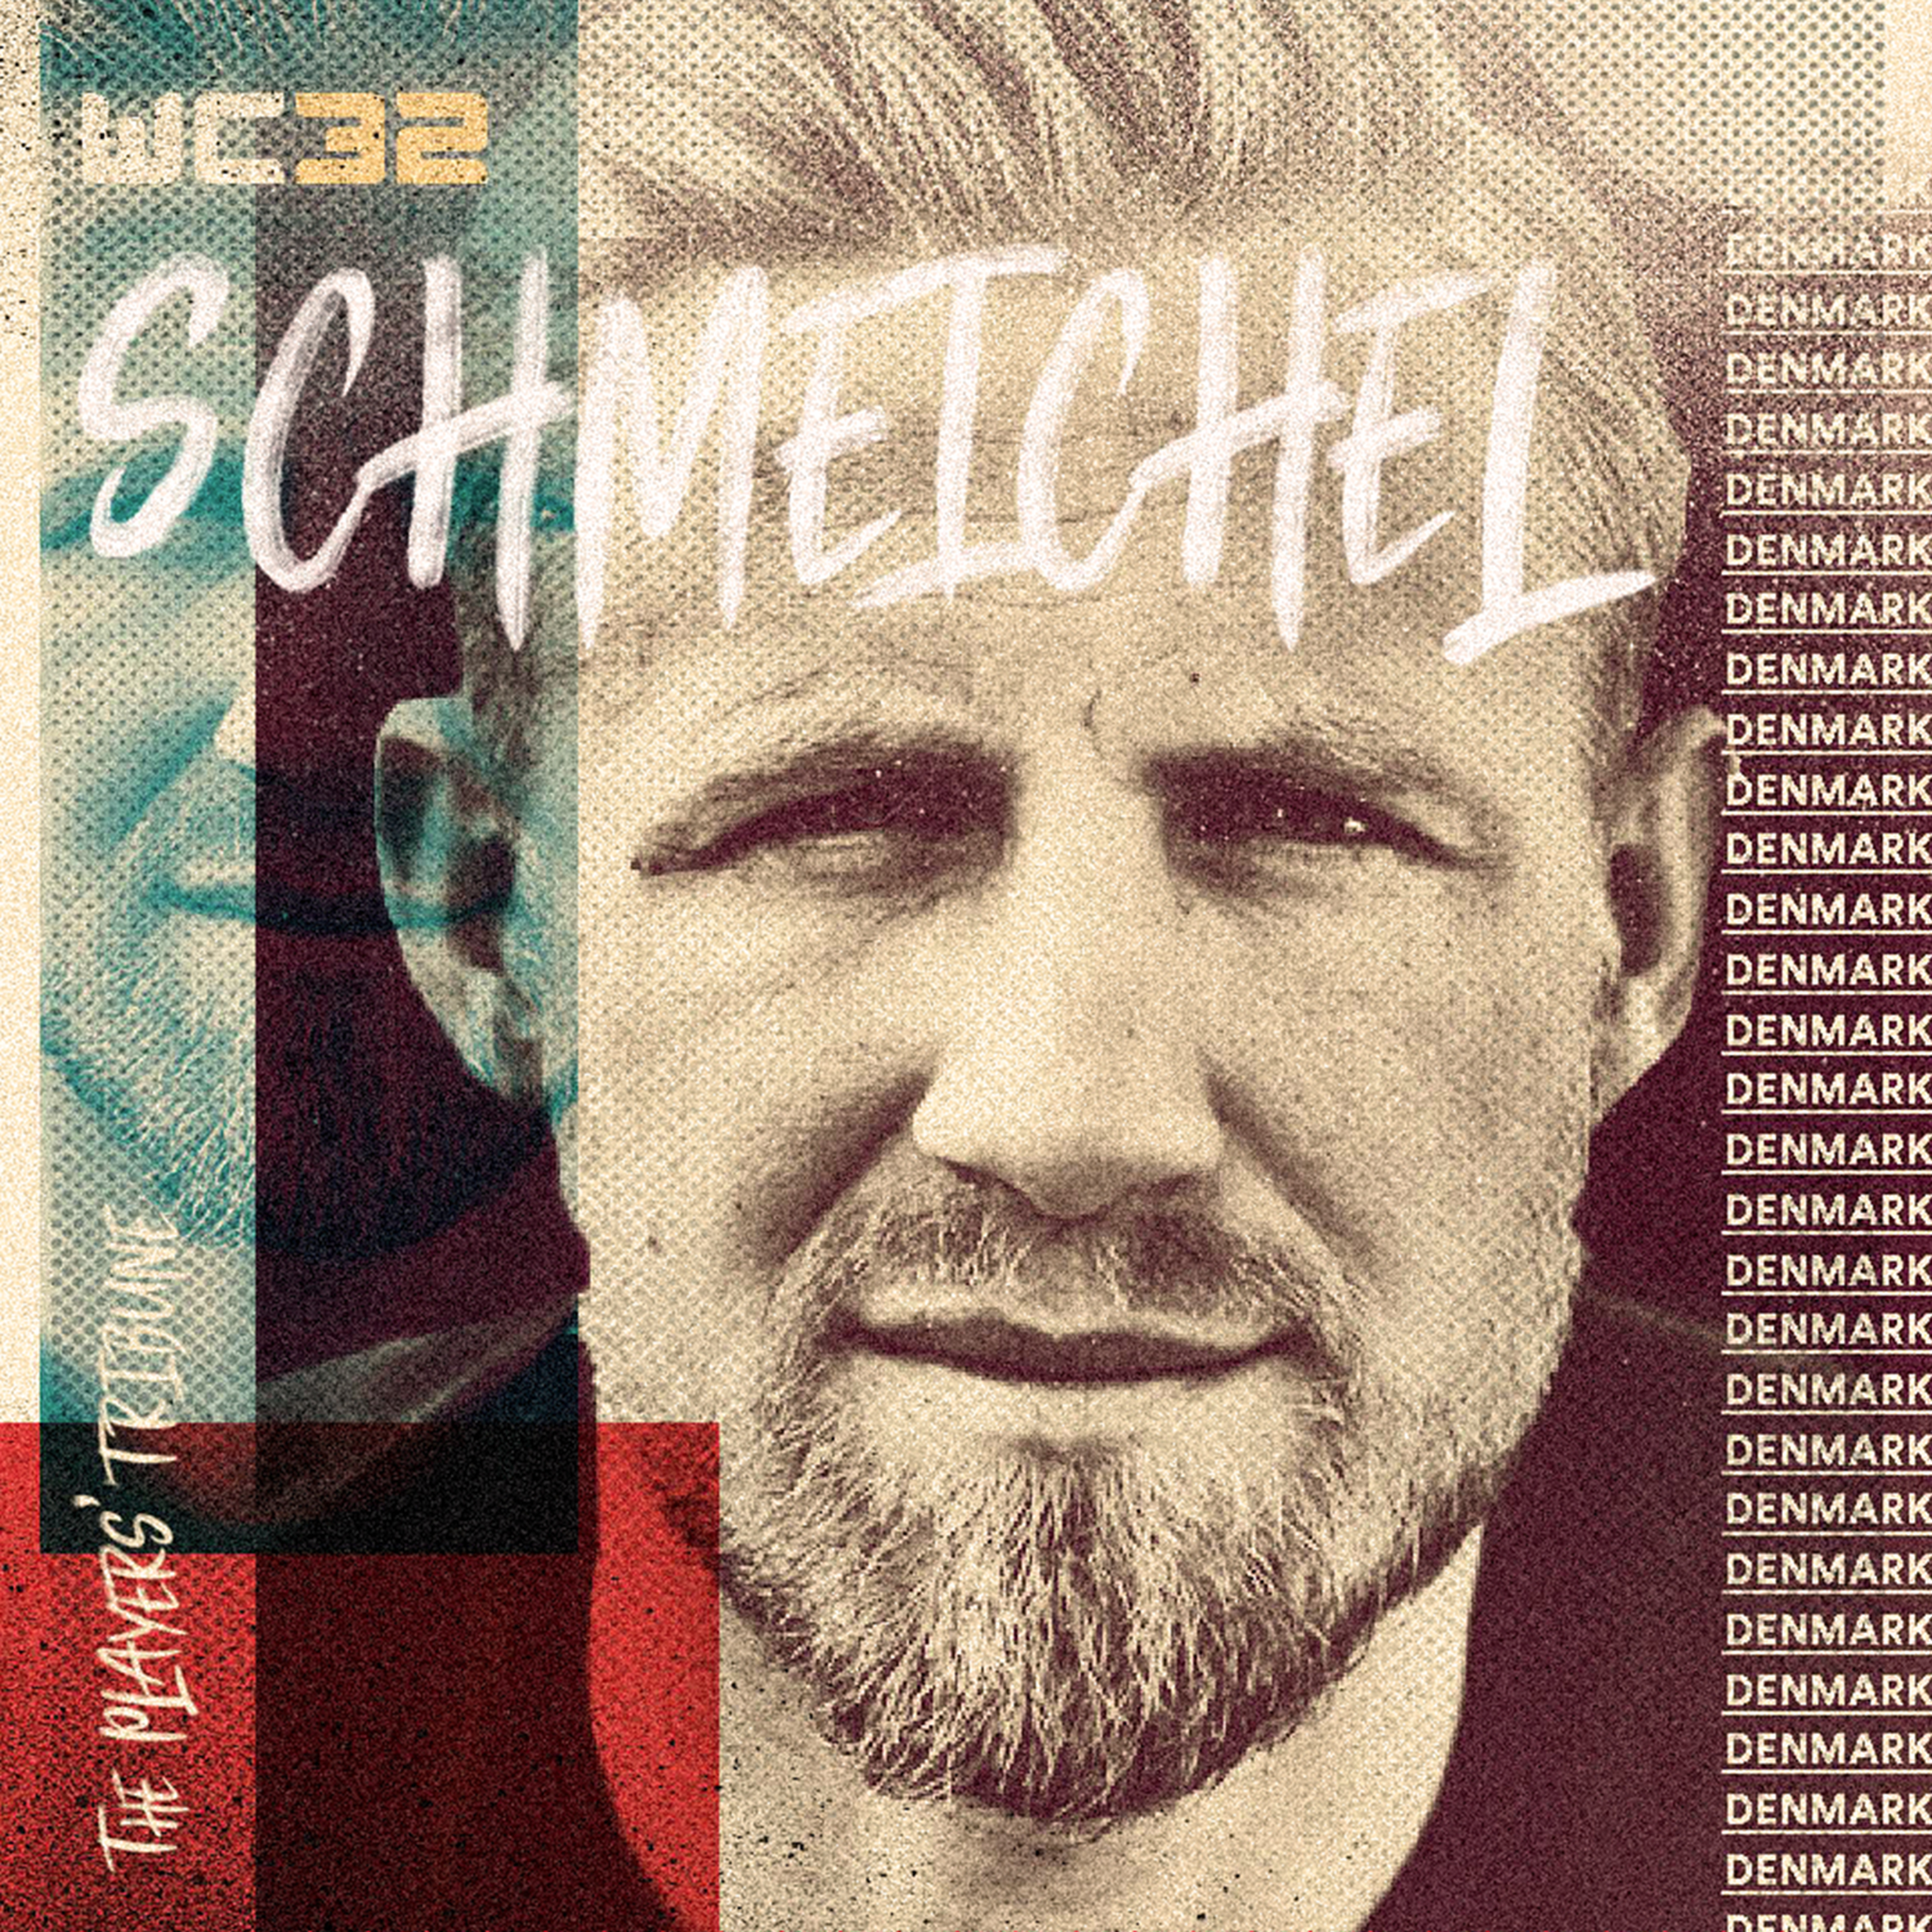 cover art for Kasper Schmeichel (Denmark)